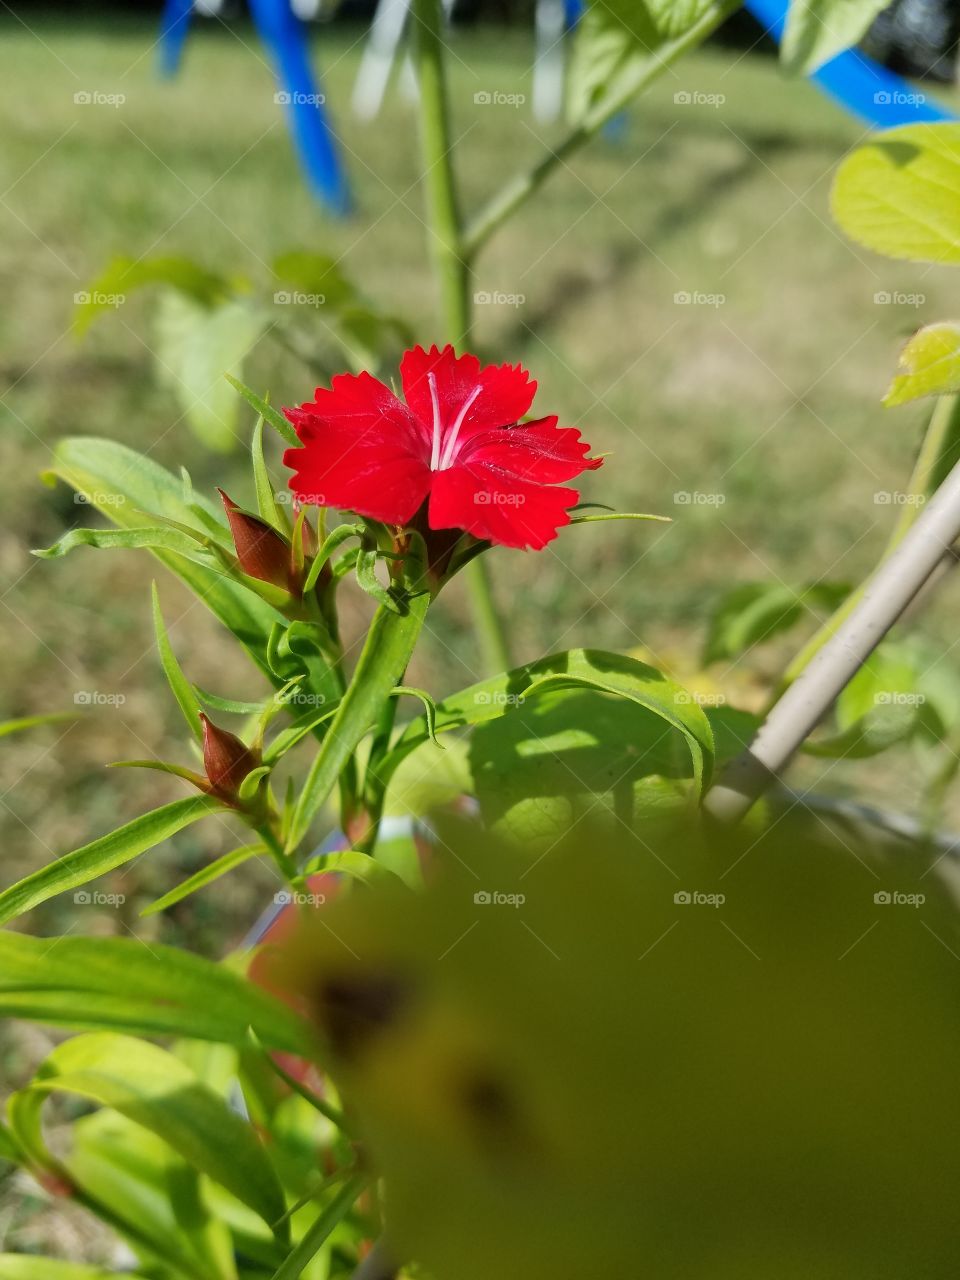 flower in my garden